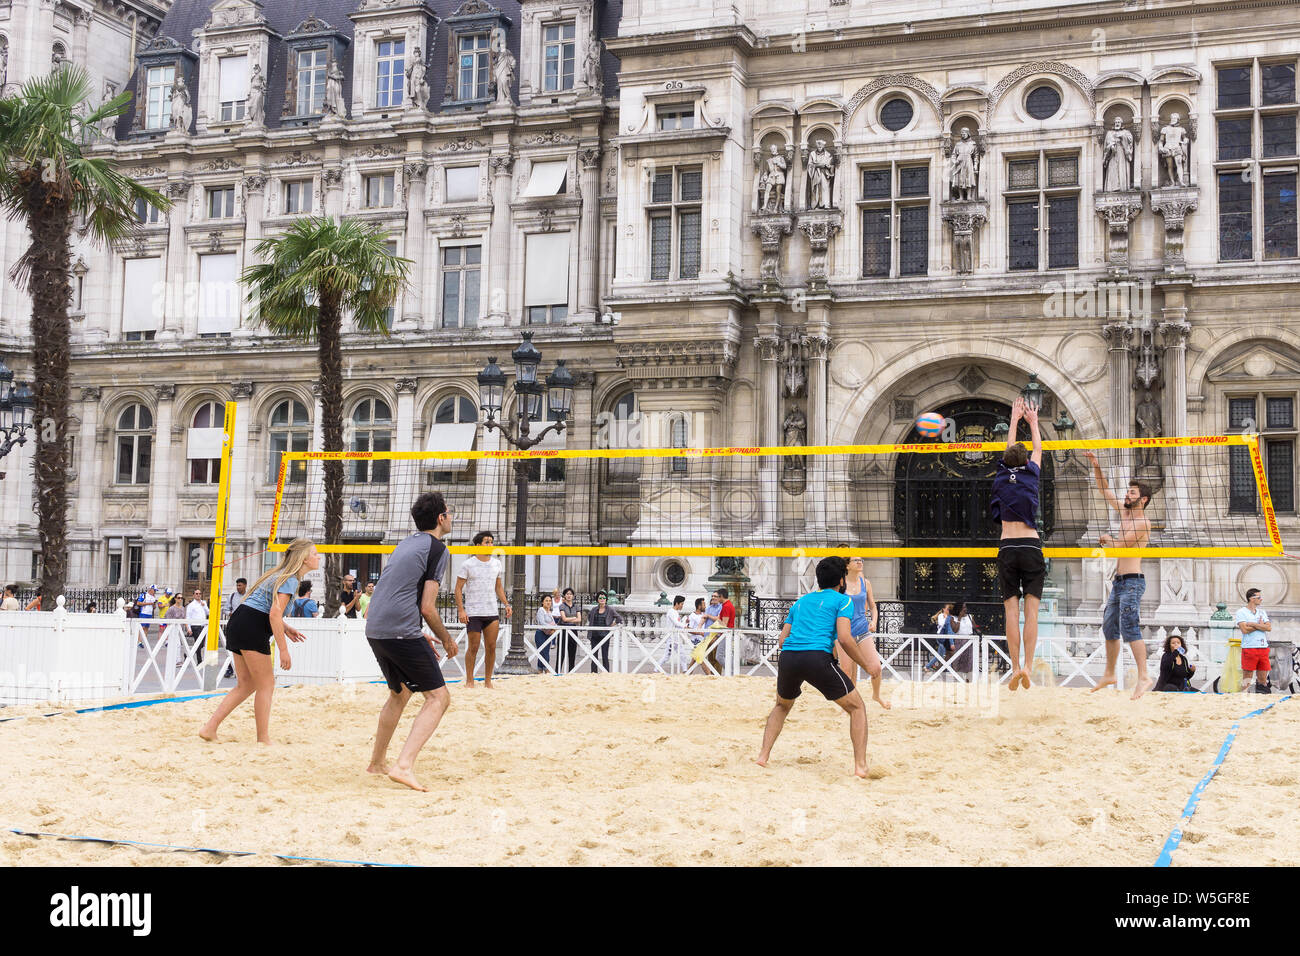 Paris Sport - Menschen spielen Beachvolleyball vor dem Hotel de Ville als Teil der jährlichen Paris Plage Ereignis in Paris, Frankreich, Europa. Stockfoto